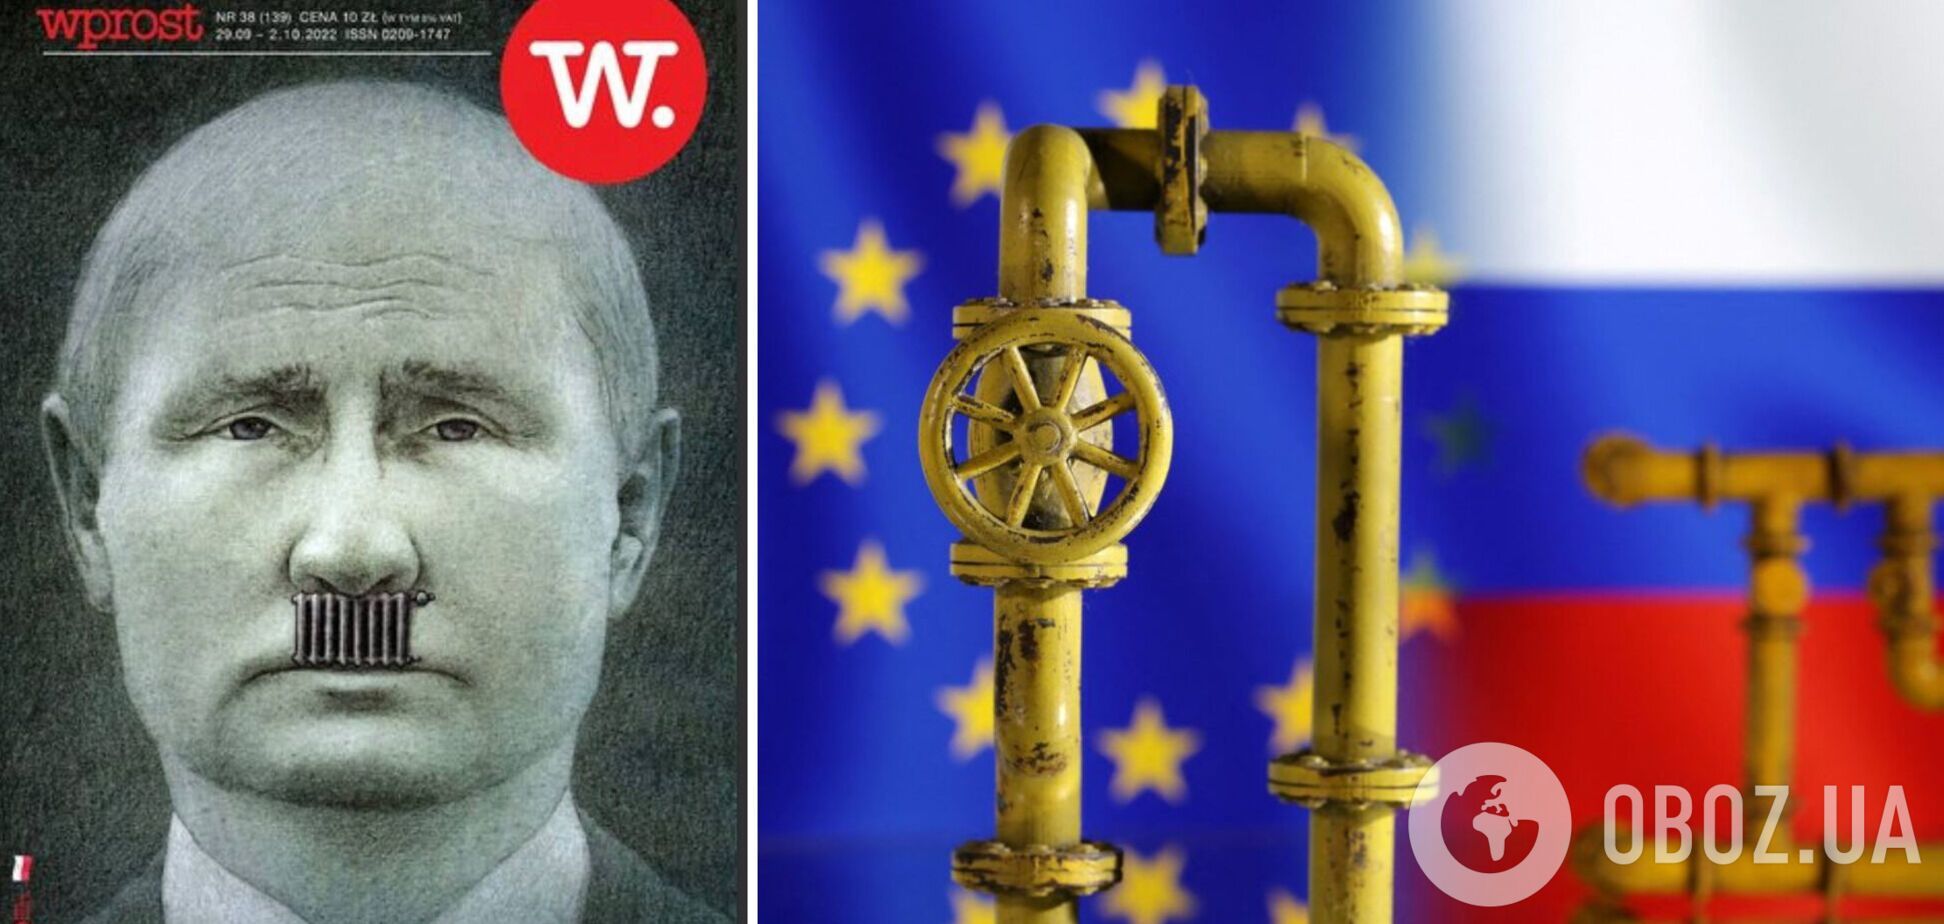 Польський журнал Wprost розмістив на обкладинці фото 'газового фюрера' Путіна